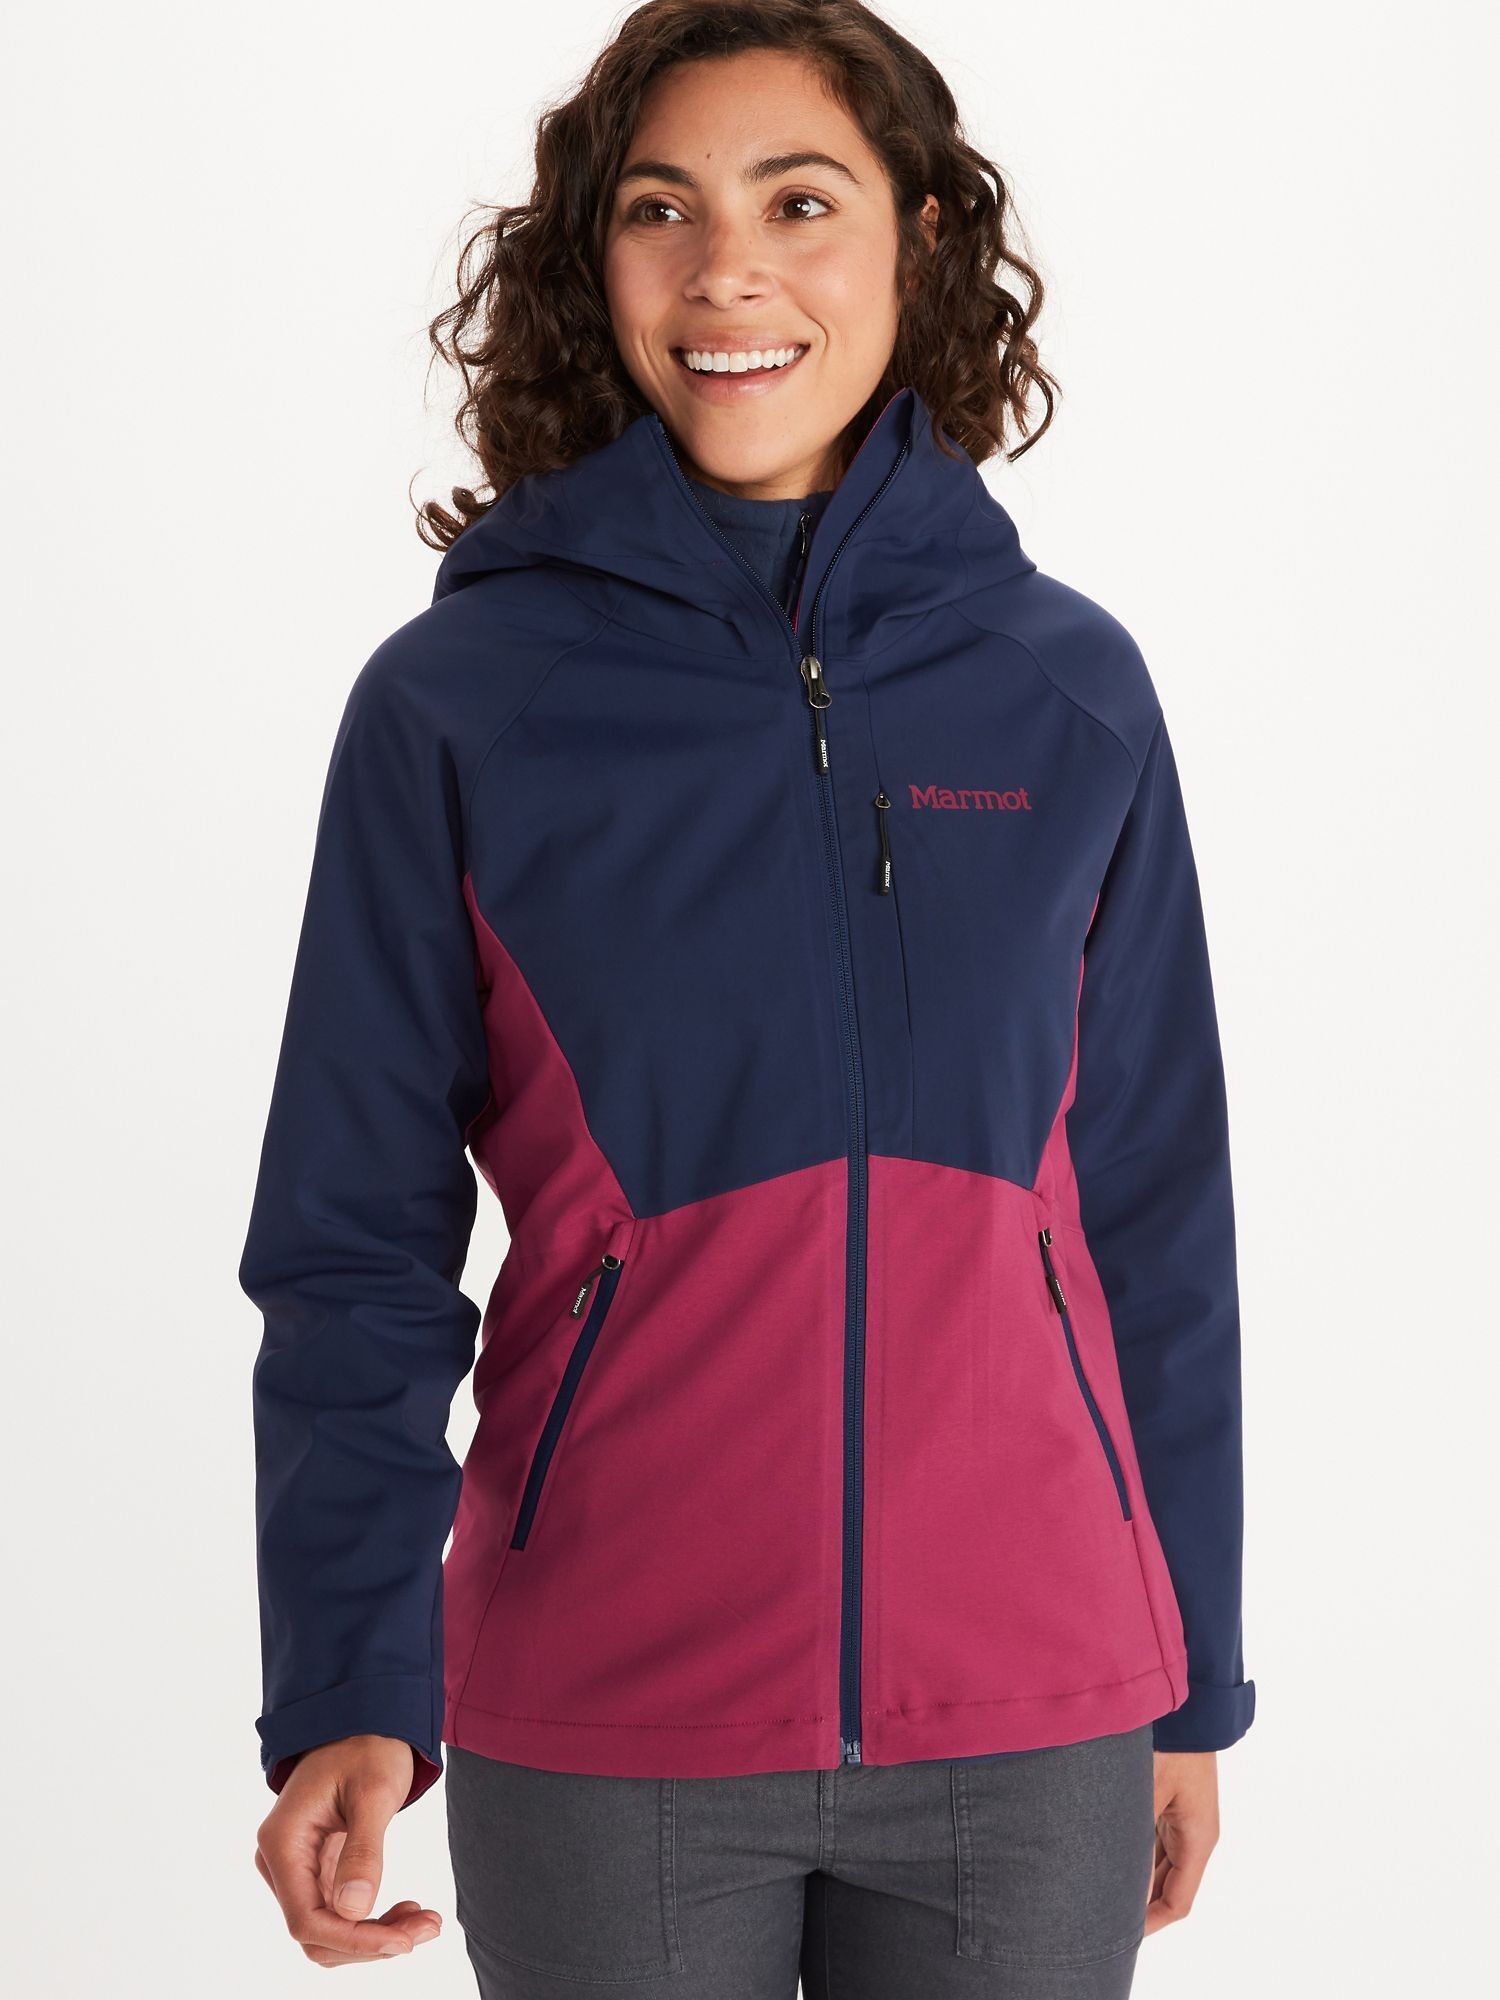 Marmot ROM 2.0 Hoody - Softshell jacket - Women's